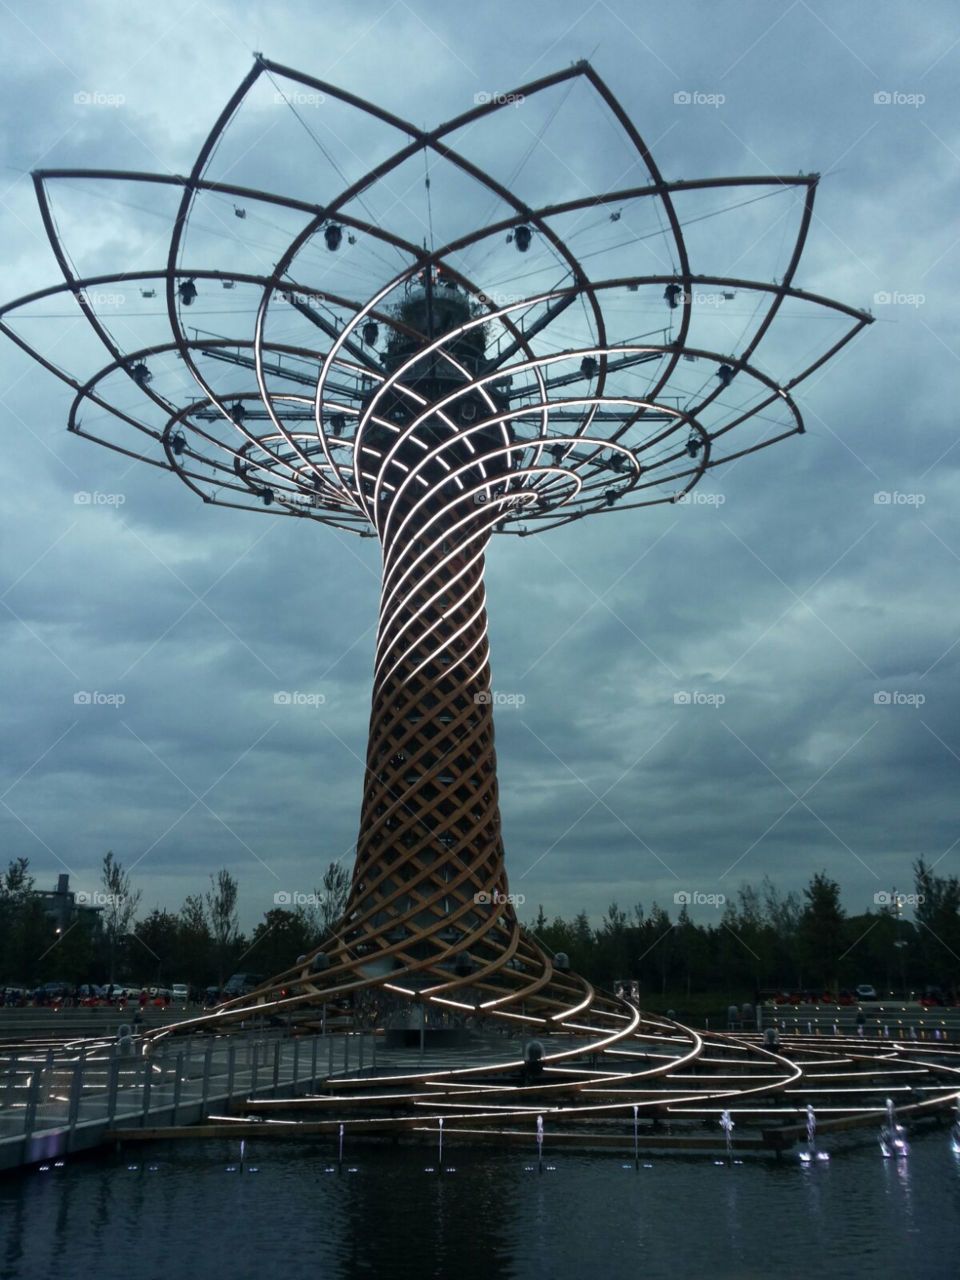 The tree of life EXPO. Milan, Expo 2015